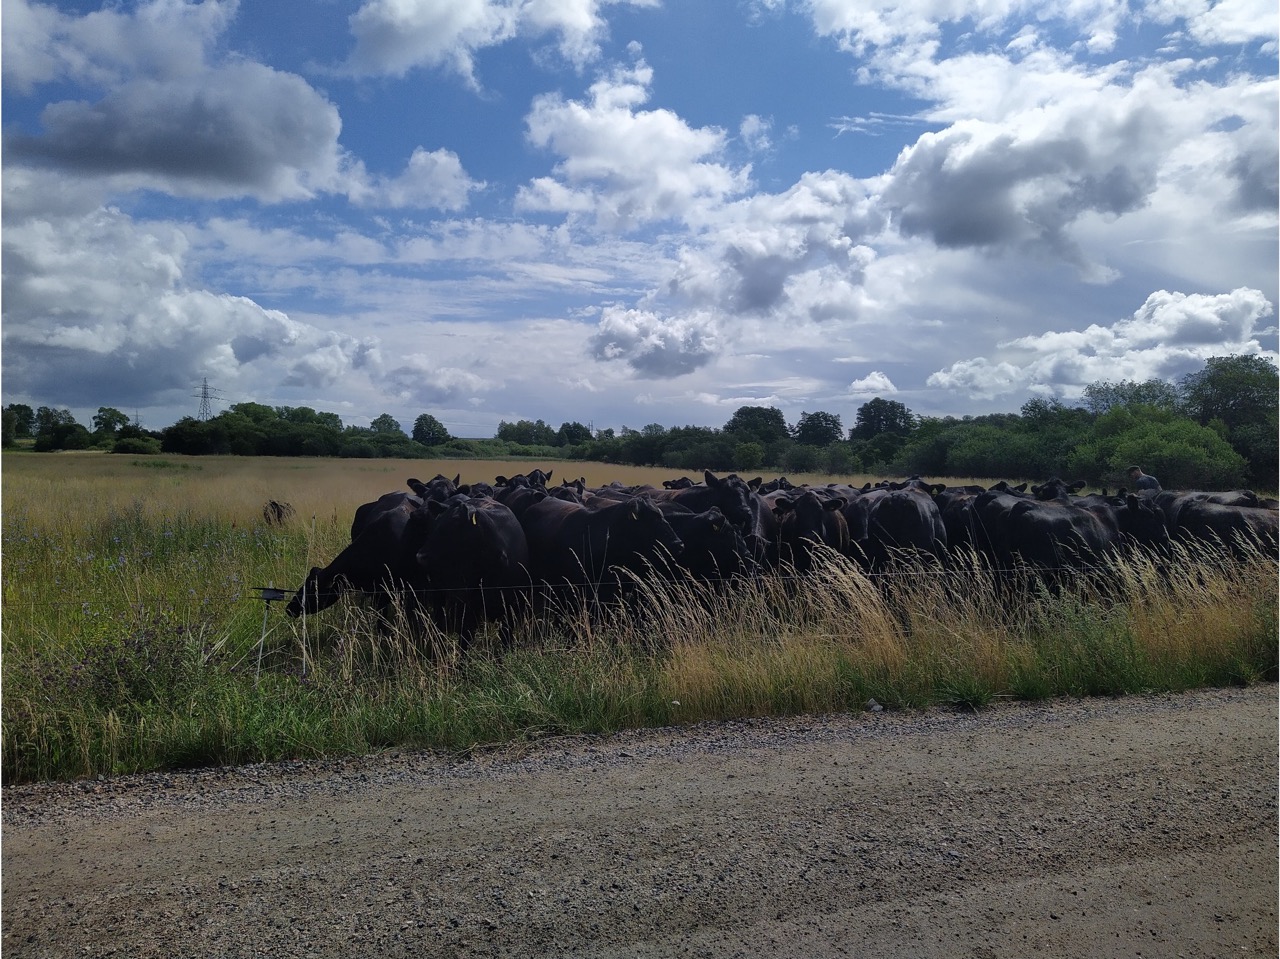 En grupp svarta kor står i en hage nära en grusväg. Blå himmel med spridda moln bakom.